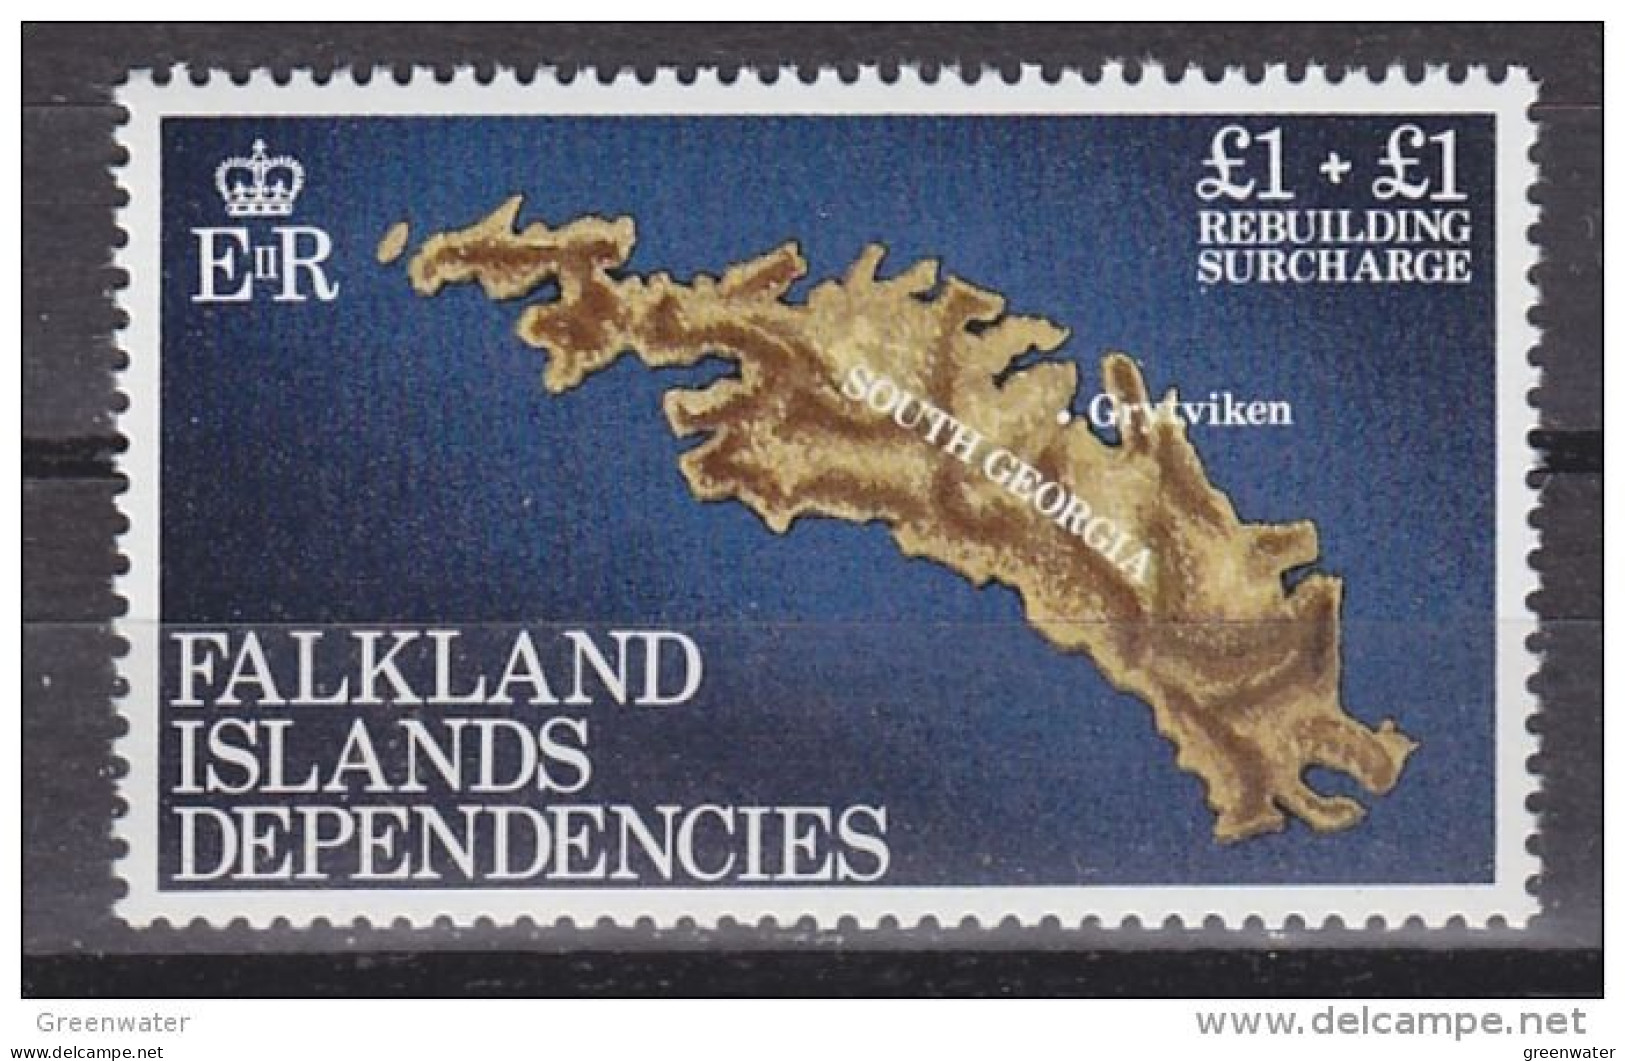 Falkland Islands Dependencies (FID) 1982 Rebuilding Fund 1v  ** Mnh (59843) - Südgeorgien